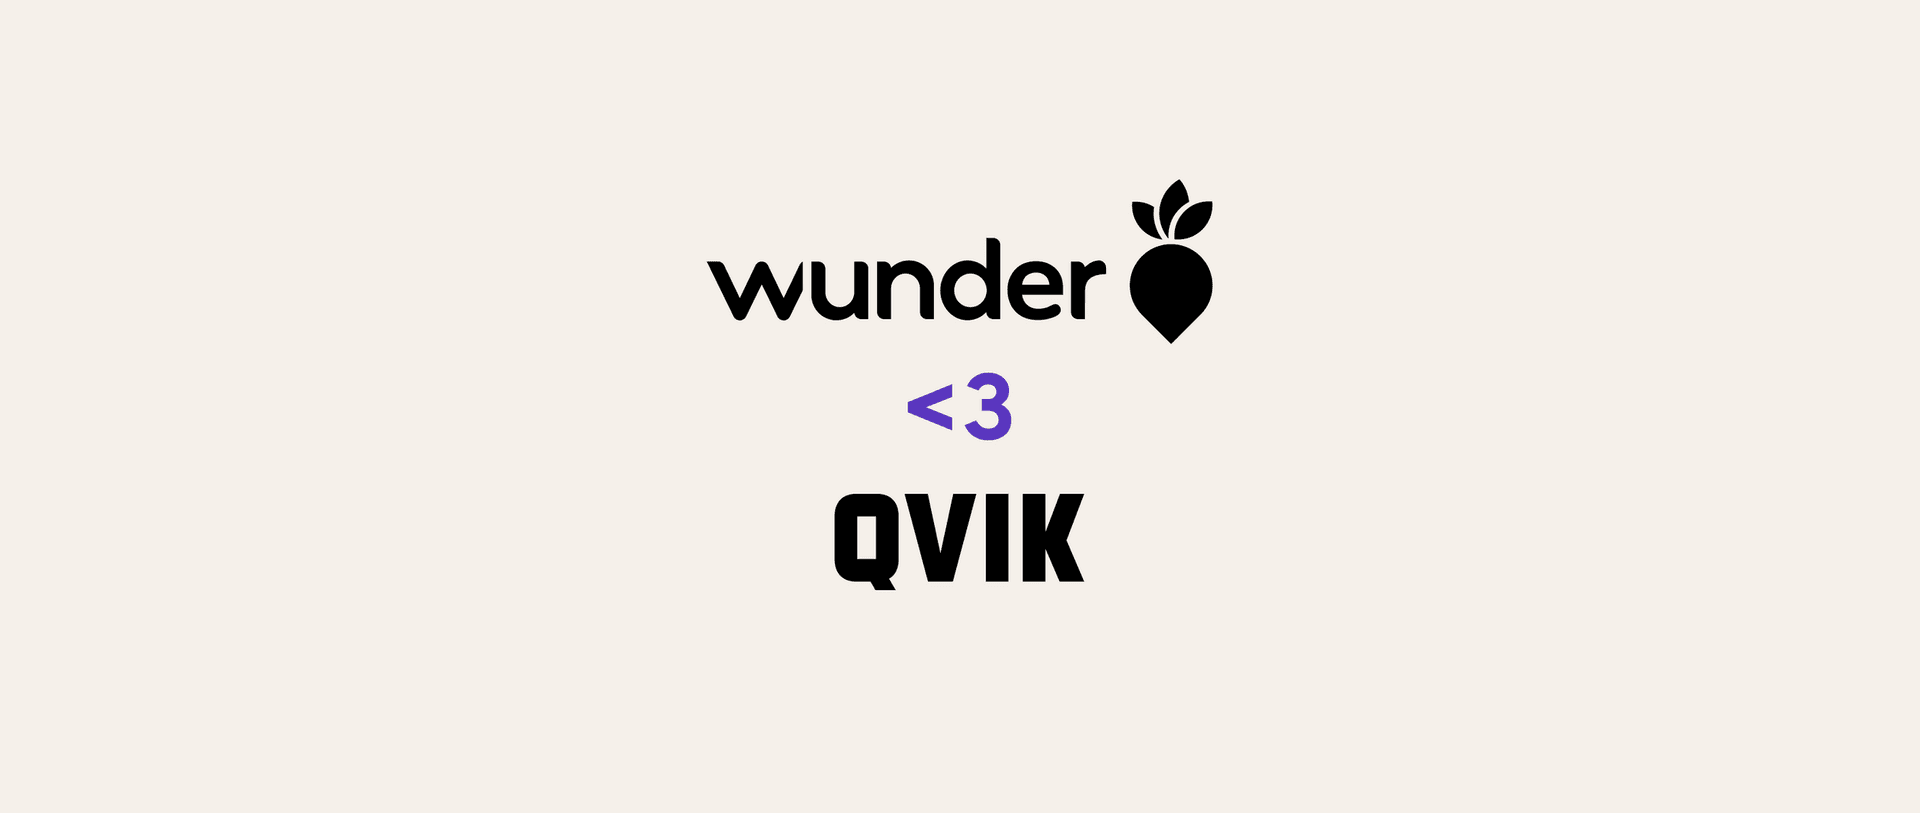 Wunder and Qvik logos with heart emoji inbetween